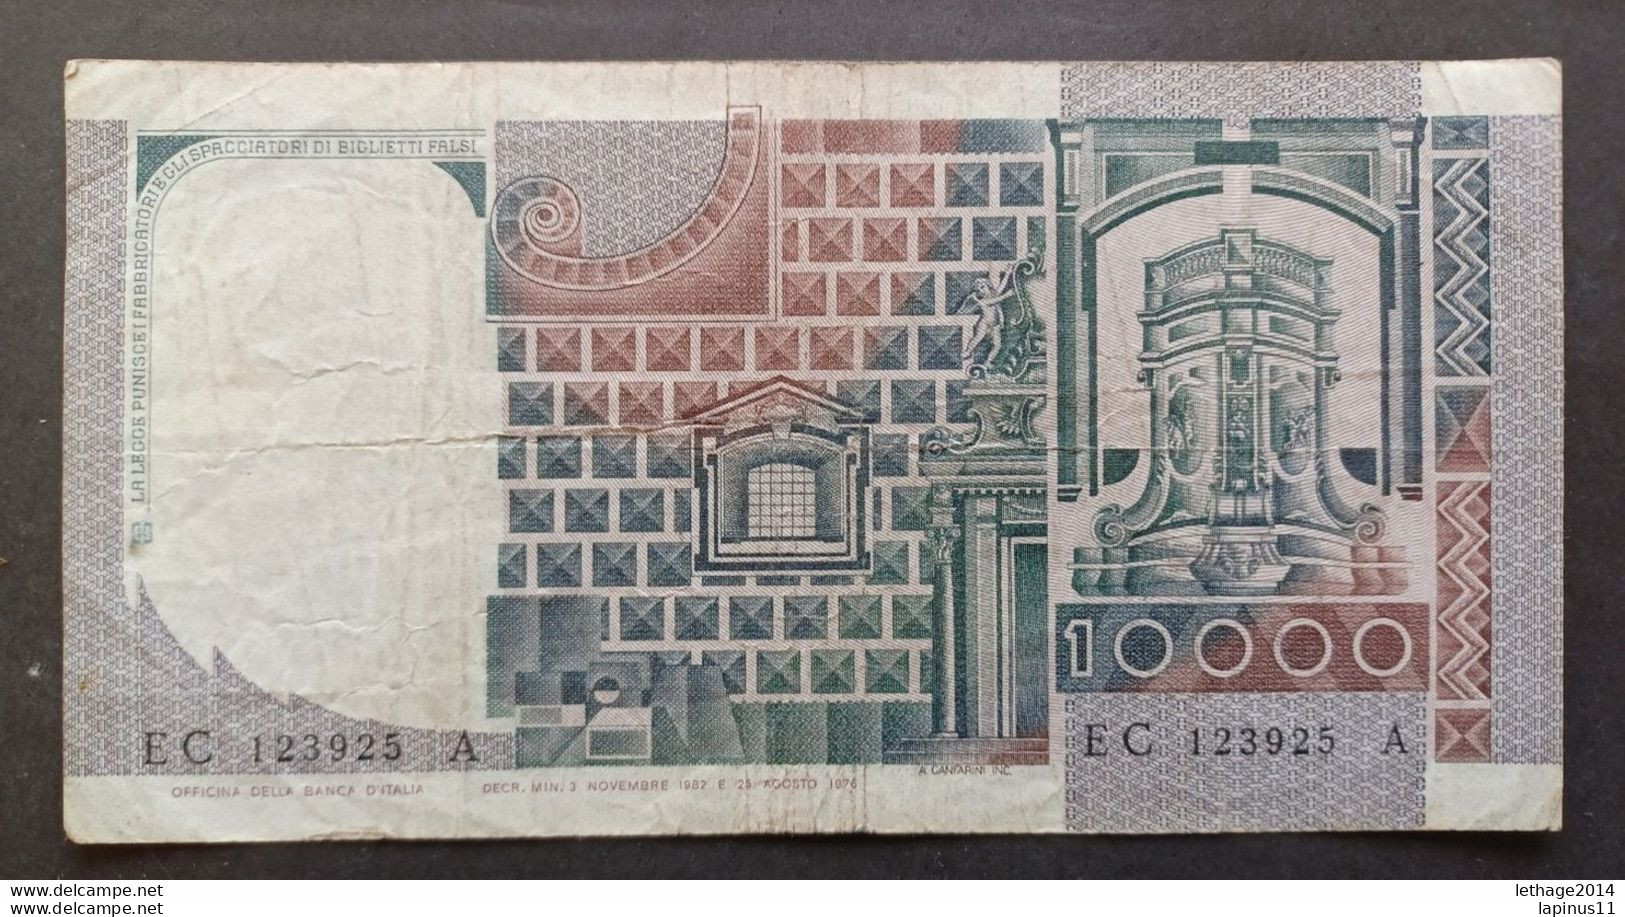 BANKNOTE ITALY 10000 LIRE 1982 OC - H CIAMPI STEVANI - 1.000 Lire